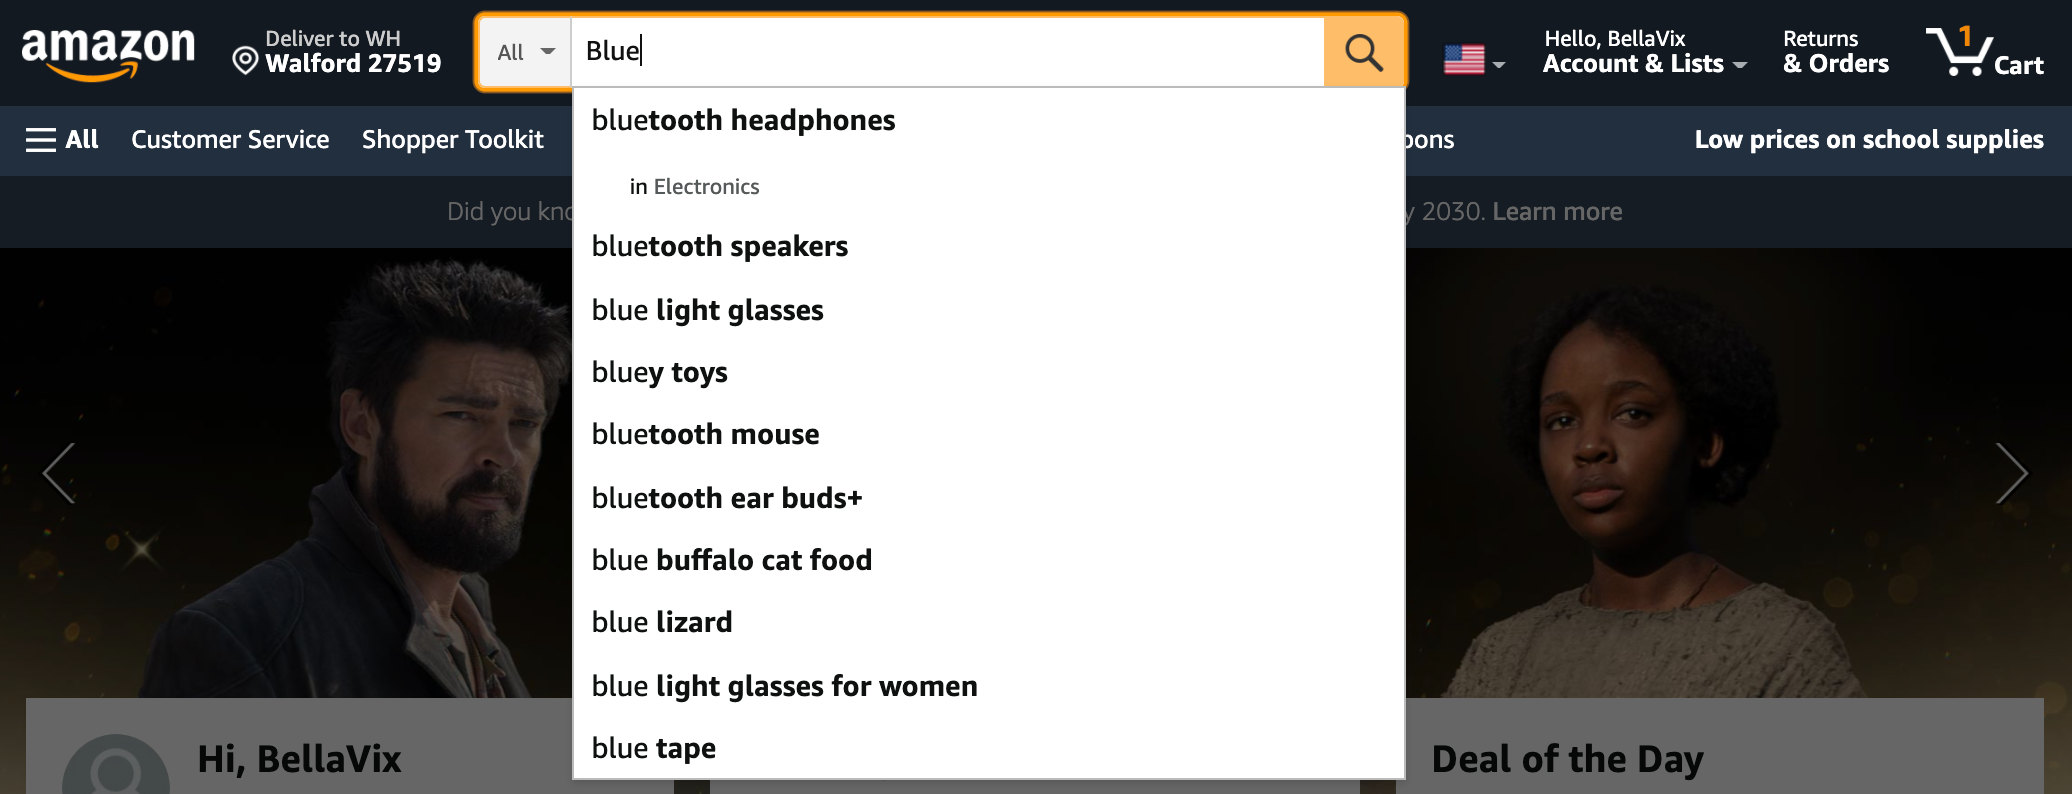 Amazon 9 Search Auto Complete